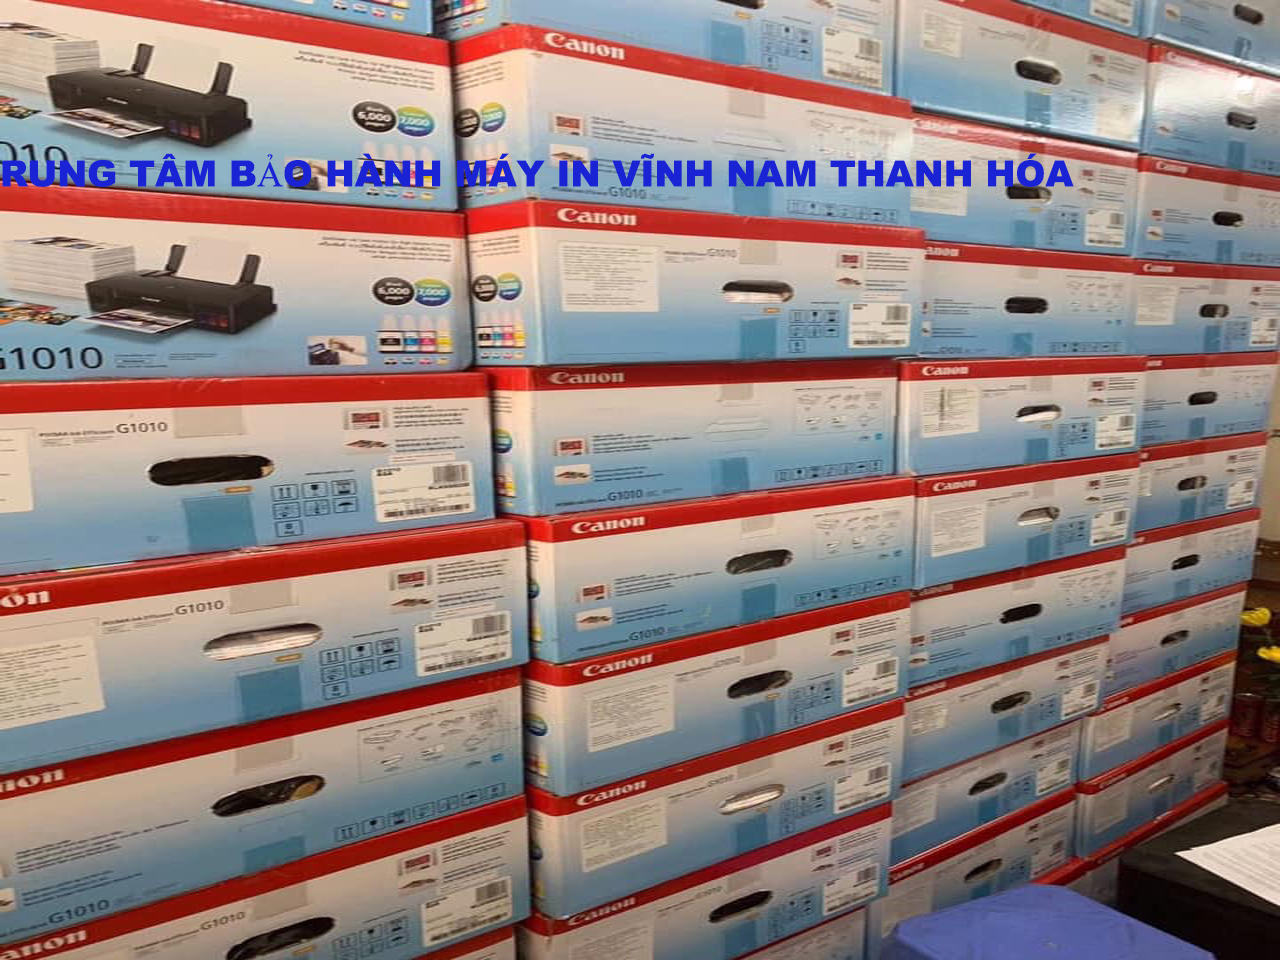 Trung Tâm Bảo Hành Máy In Vĩnh Nam chuyên Phân phối bán chuyên bảo hành sửa chữa máy in các hãng CANON BROTHER HP FUJXEROX Thanh Hóa